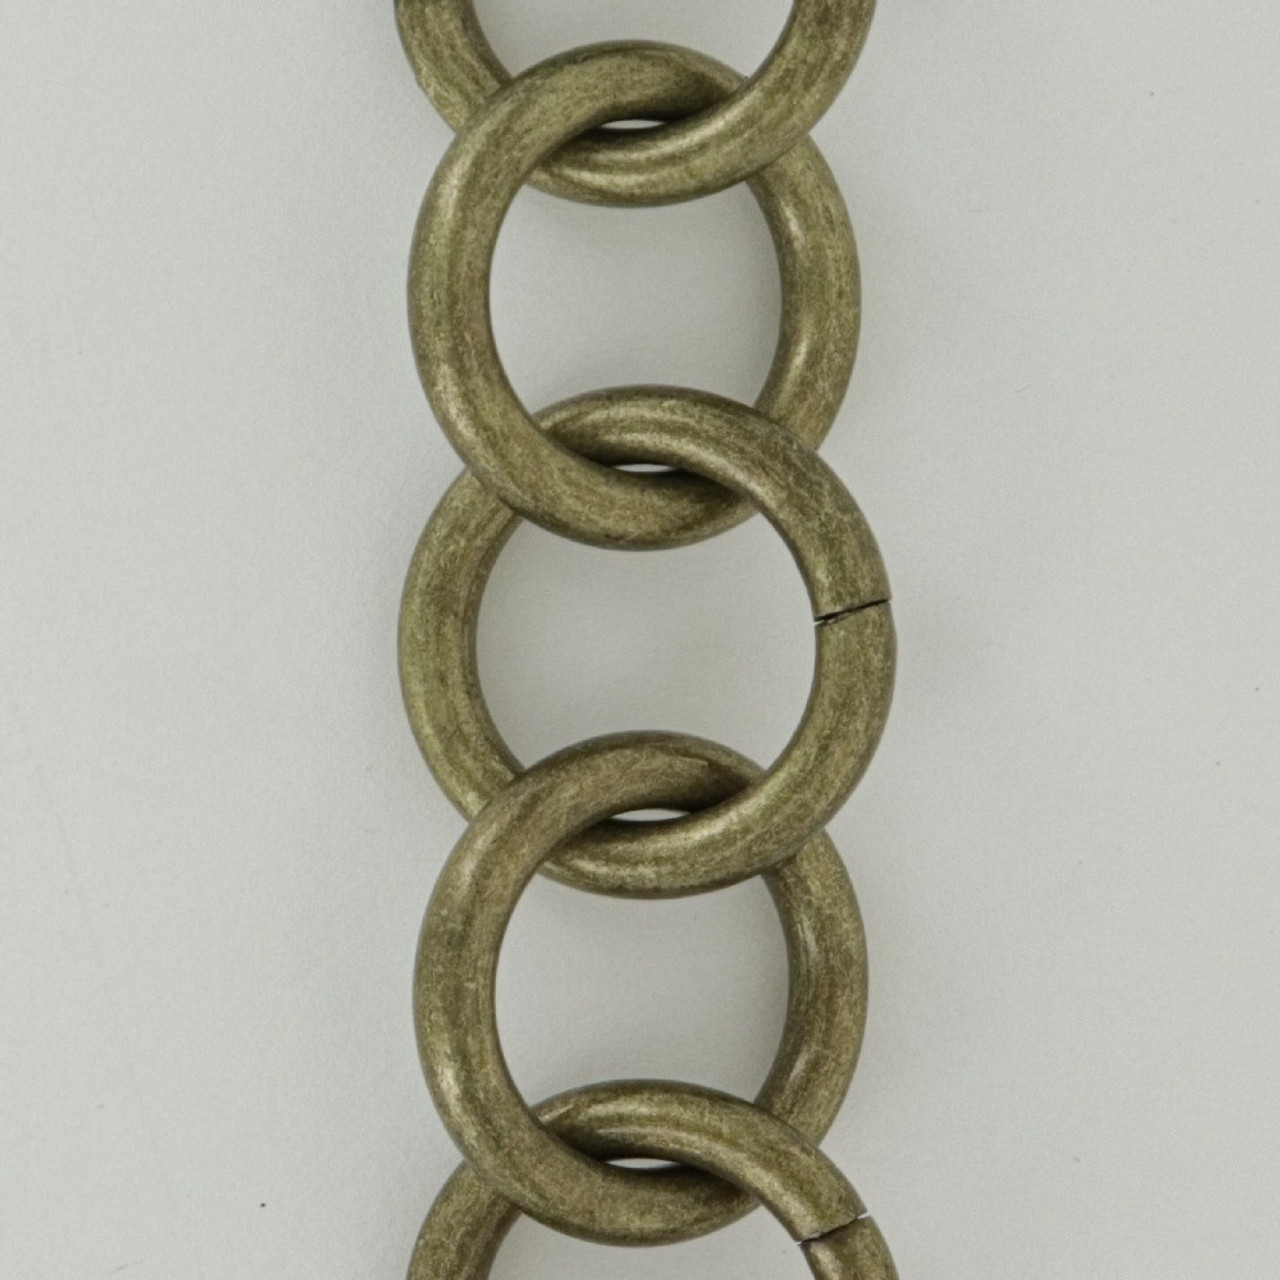 1-1/4in Diameter Round Link Brass Chain - Unfinished Brass